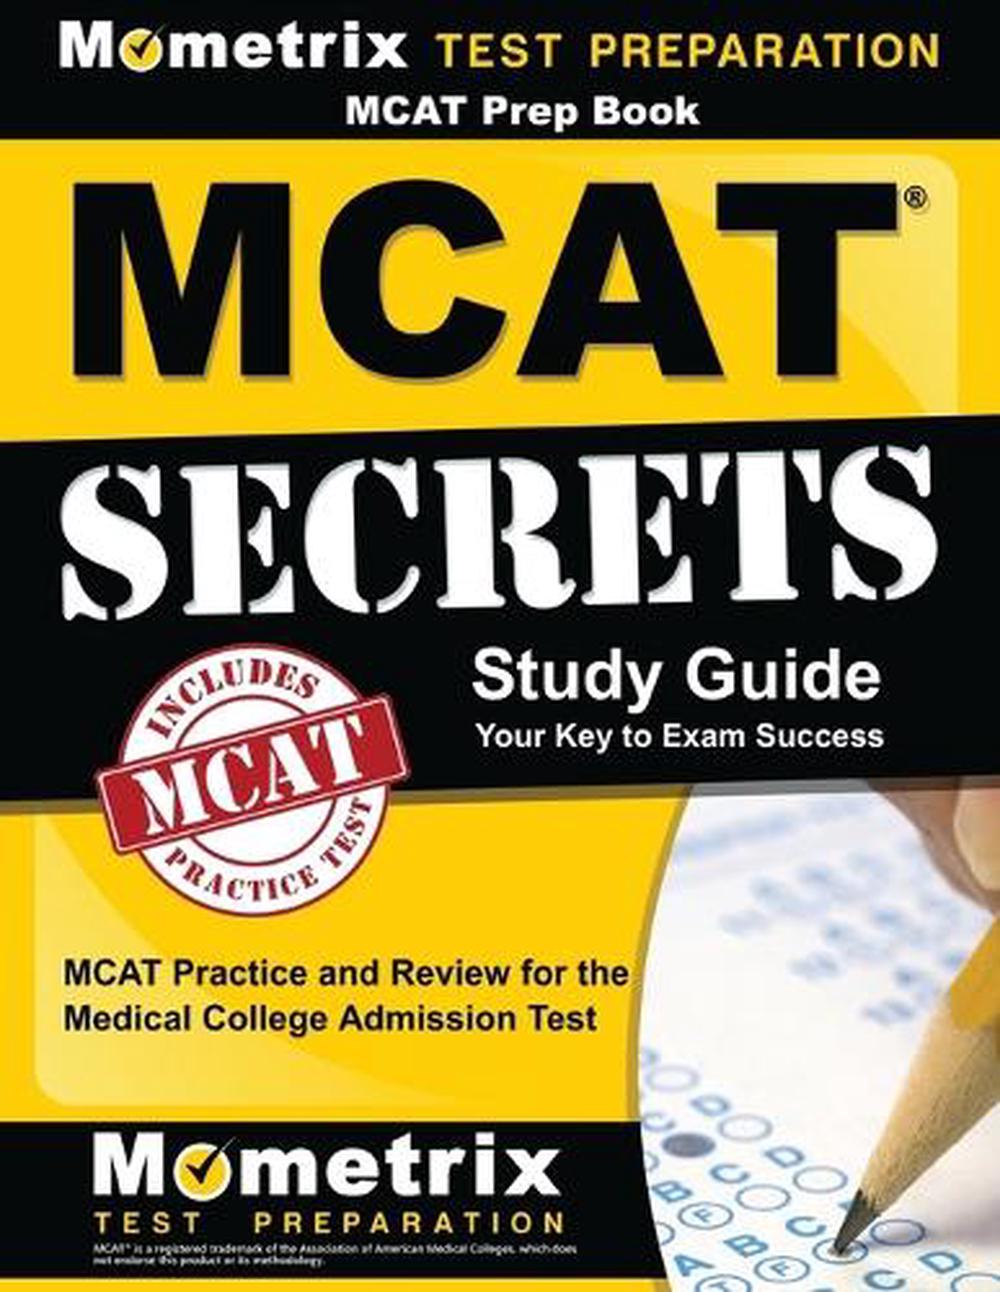 mcat practice test pdf 2017